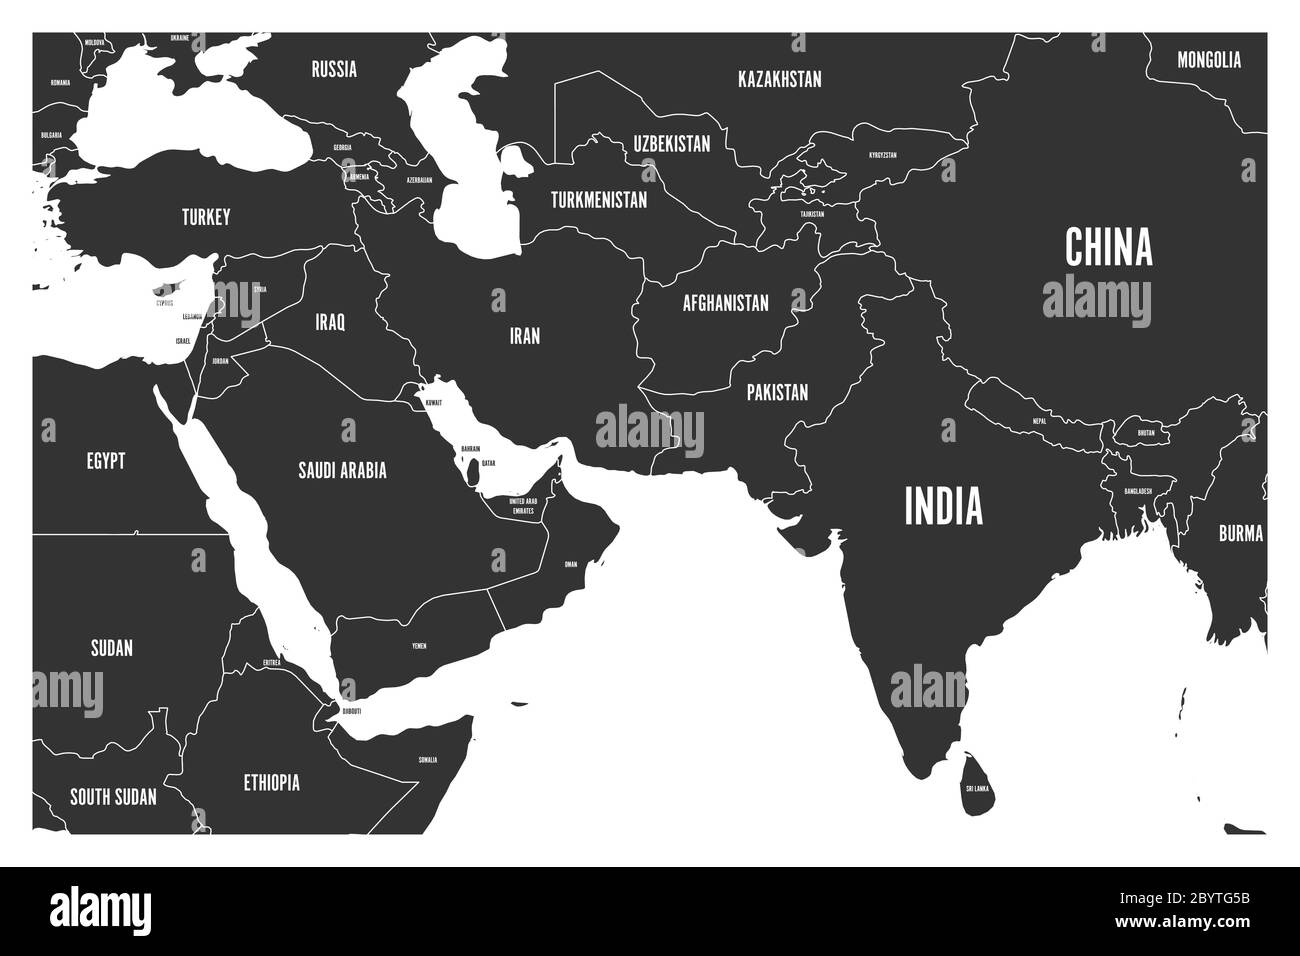 Politische Karte von Südasien und Ländern des Nahen Ostens. Einfache flache Vektorkarte in grau. Stock Vektor